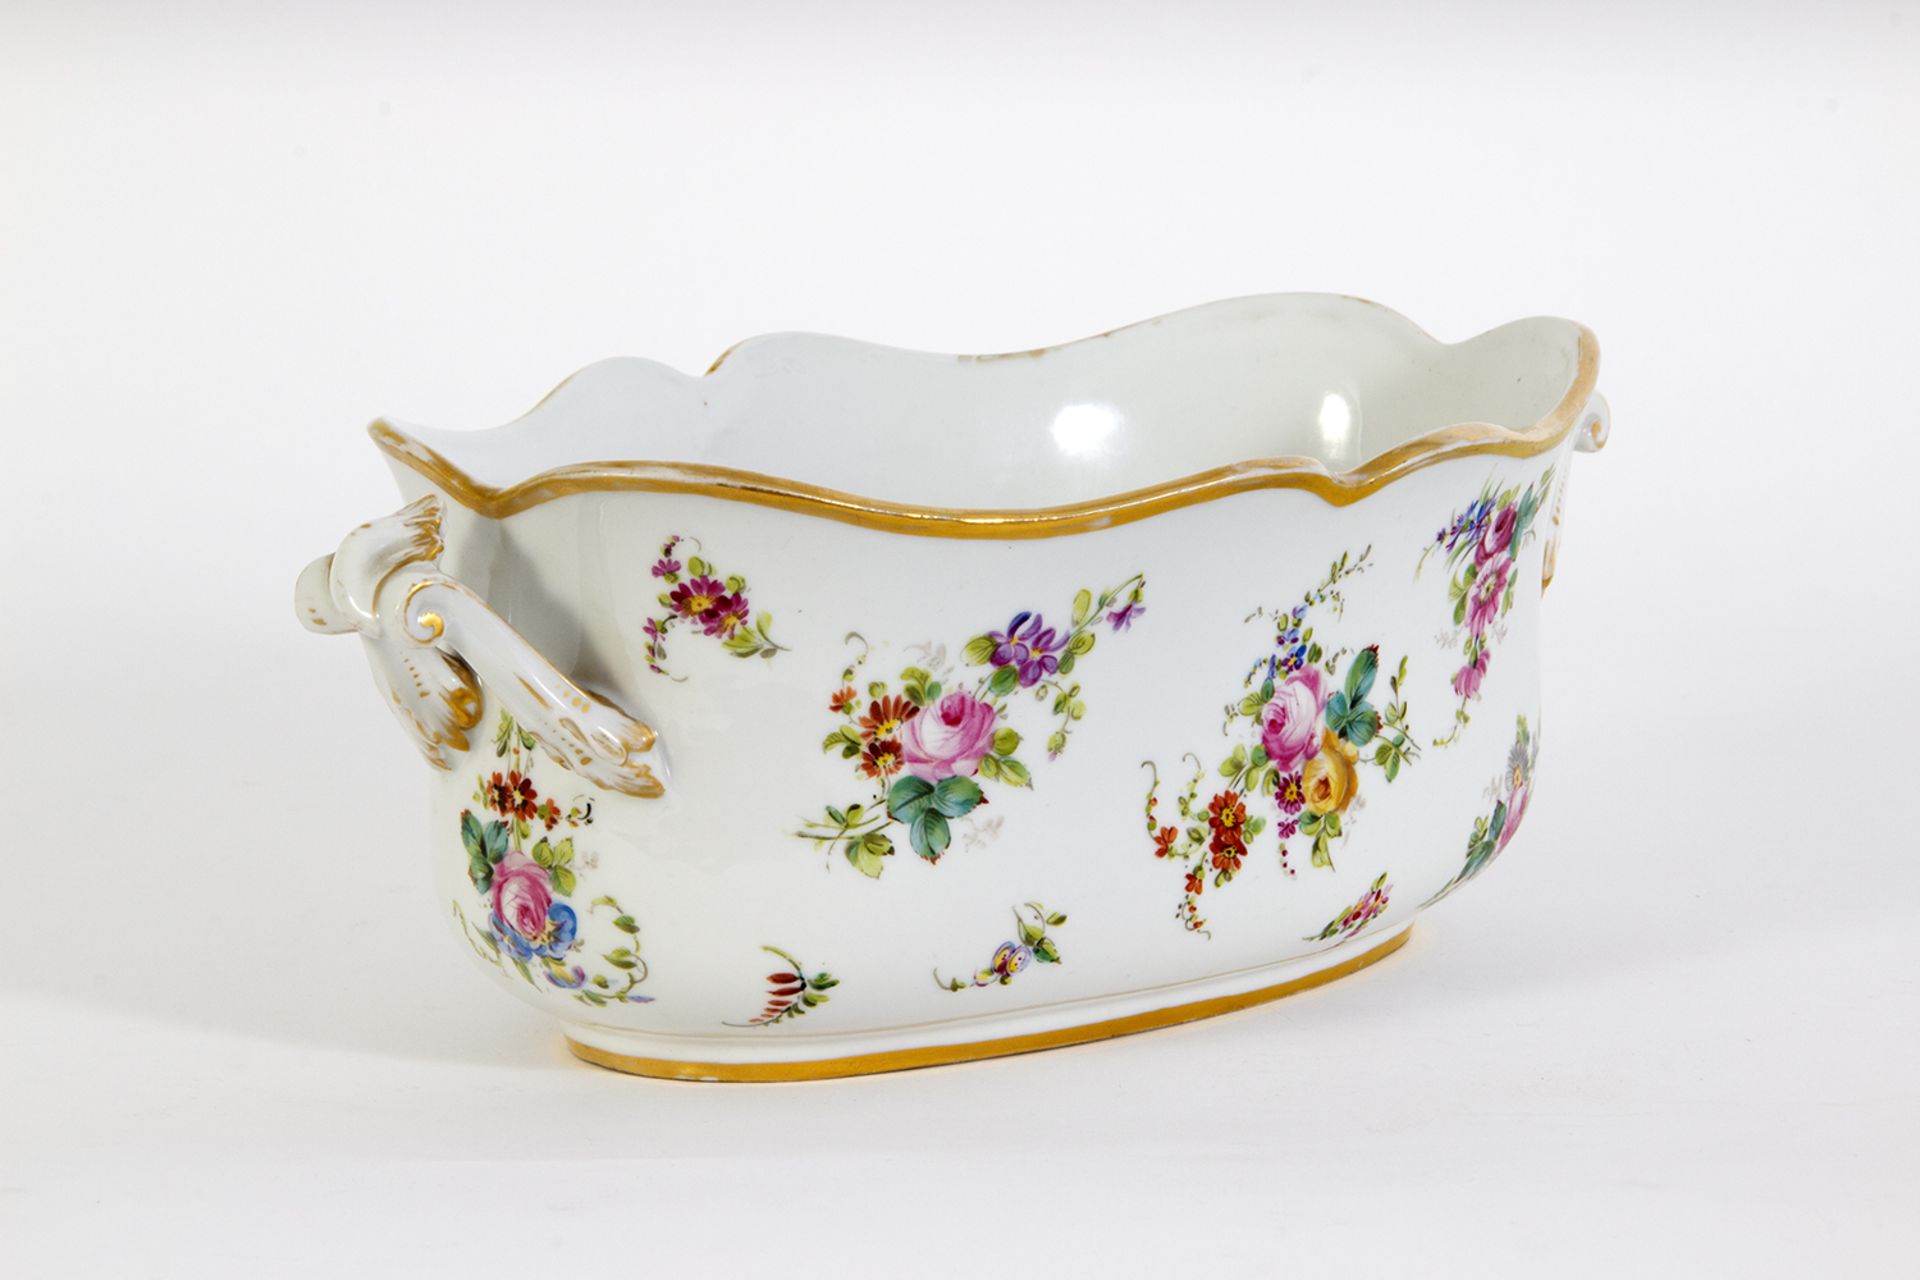 Jardinera en porcelana estilo Sèvres con decoración floral. Francia, primer tercio del siglo XX. - Image 2 of 5